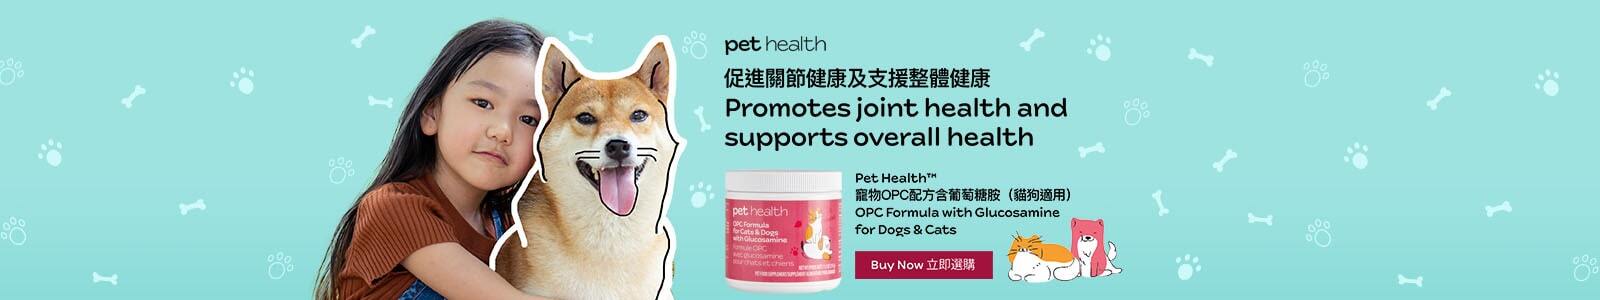 Pet Health™寵物OPC配方含葡萄糖胺（貓狗適用） 促進關節健康及支援整體健康 立即選購